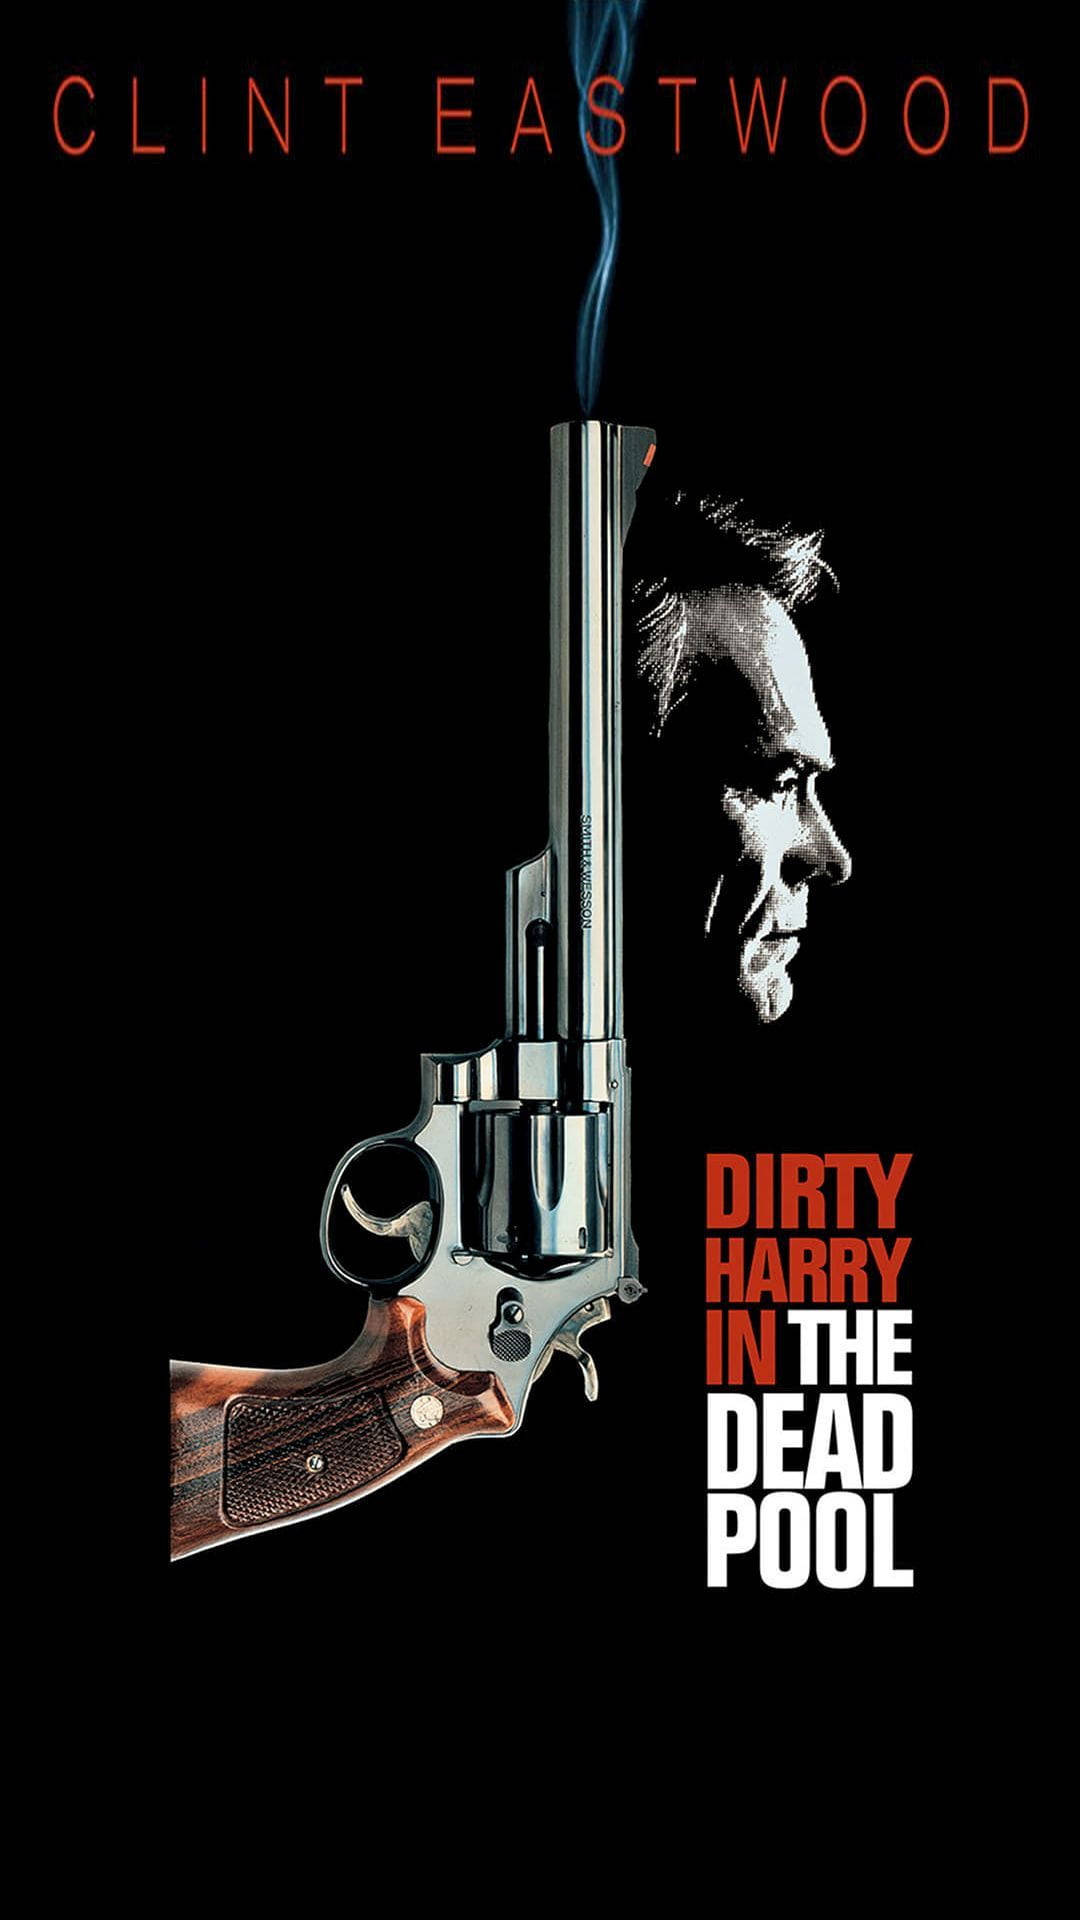 Clinteastwood Revolver Affisch Dirty Harry. Wallpaper